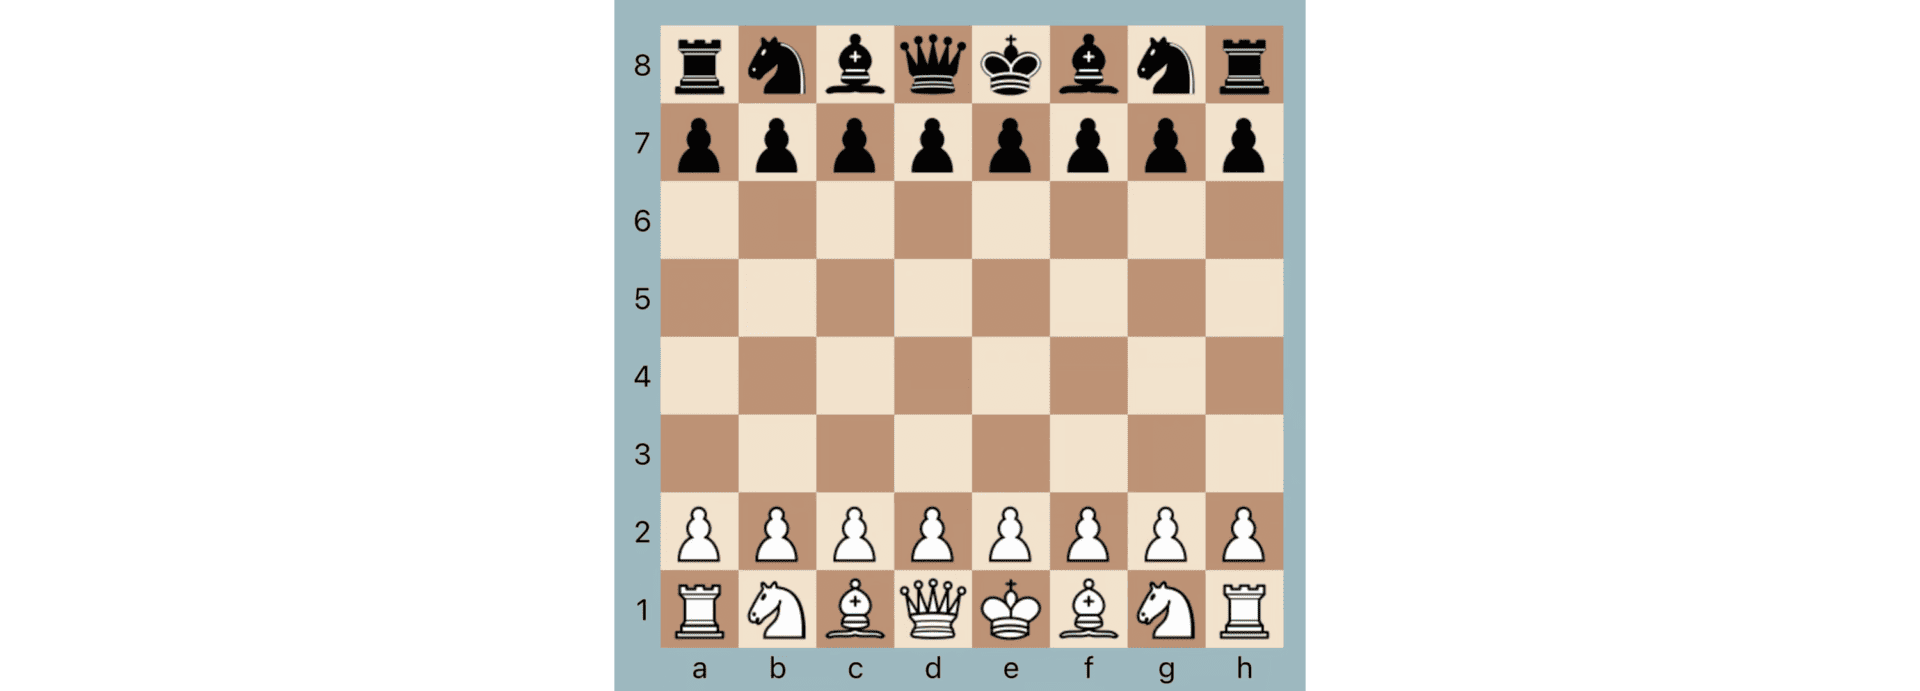 Grundstellung Schach